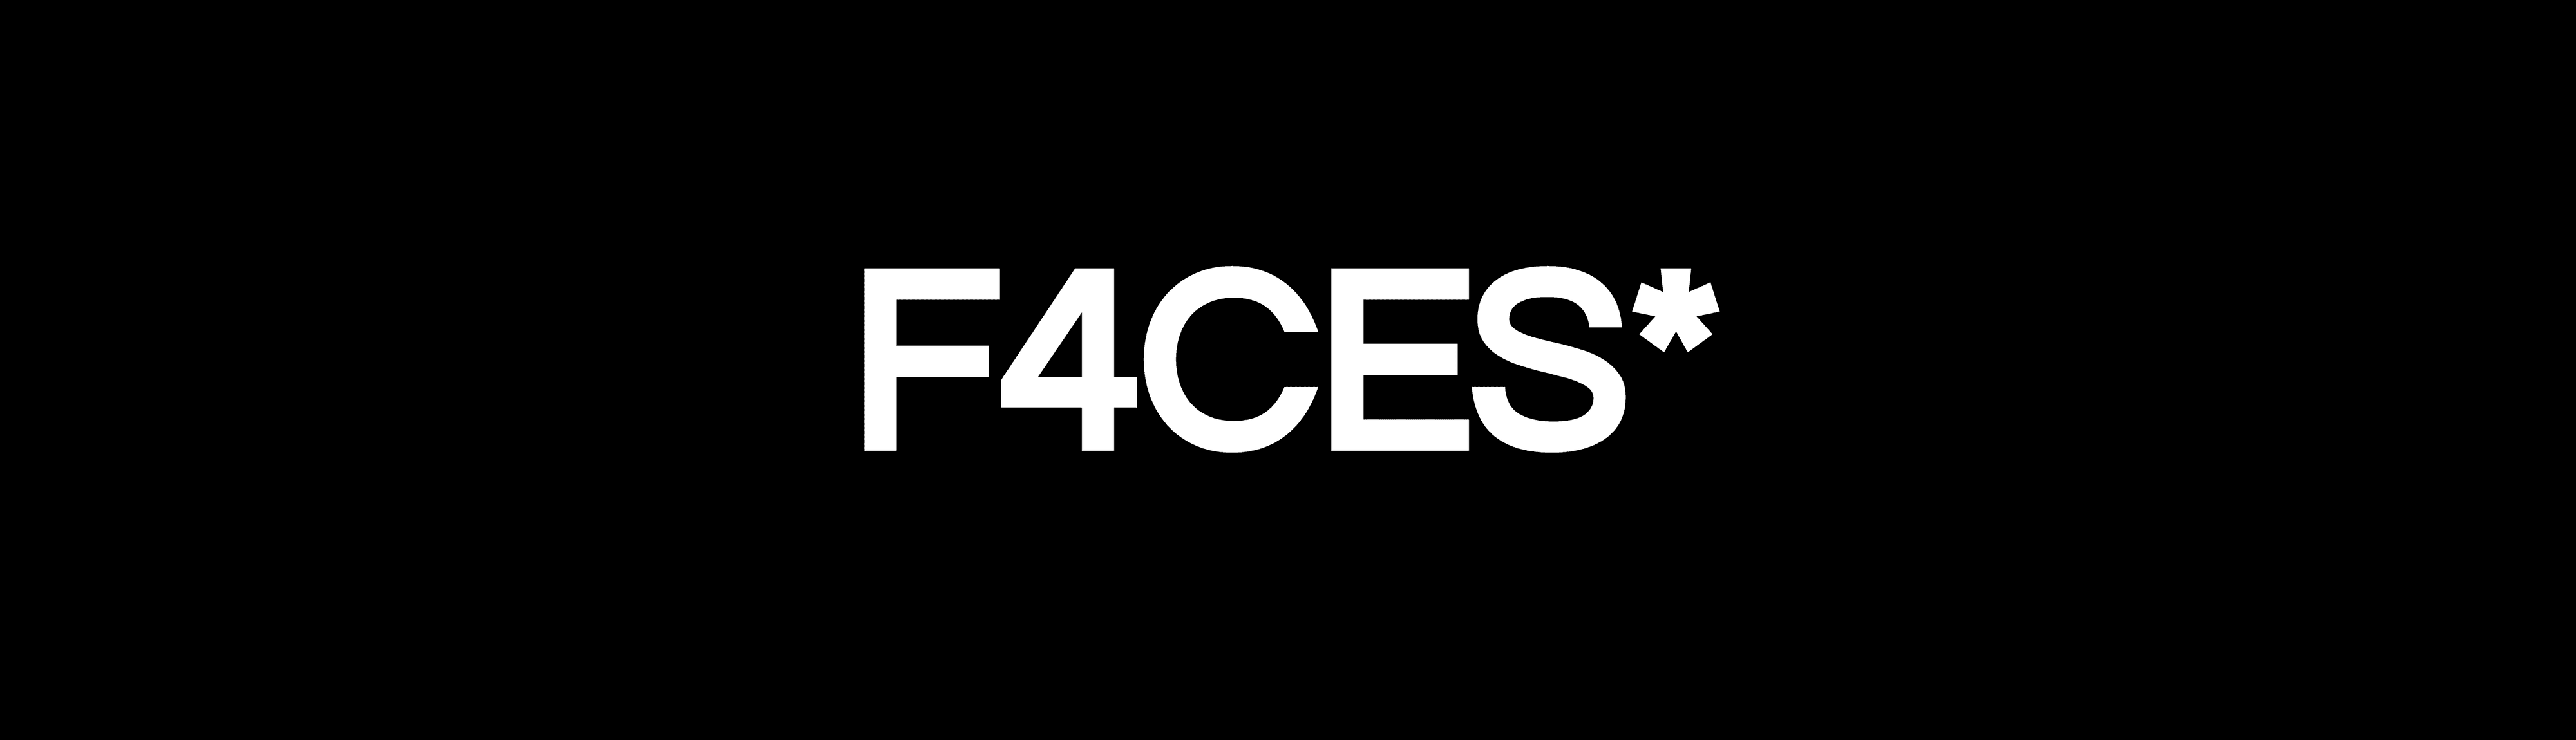 F4CES*